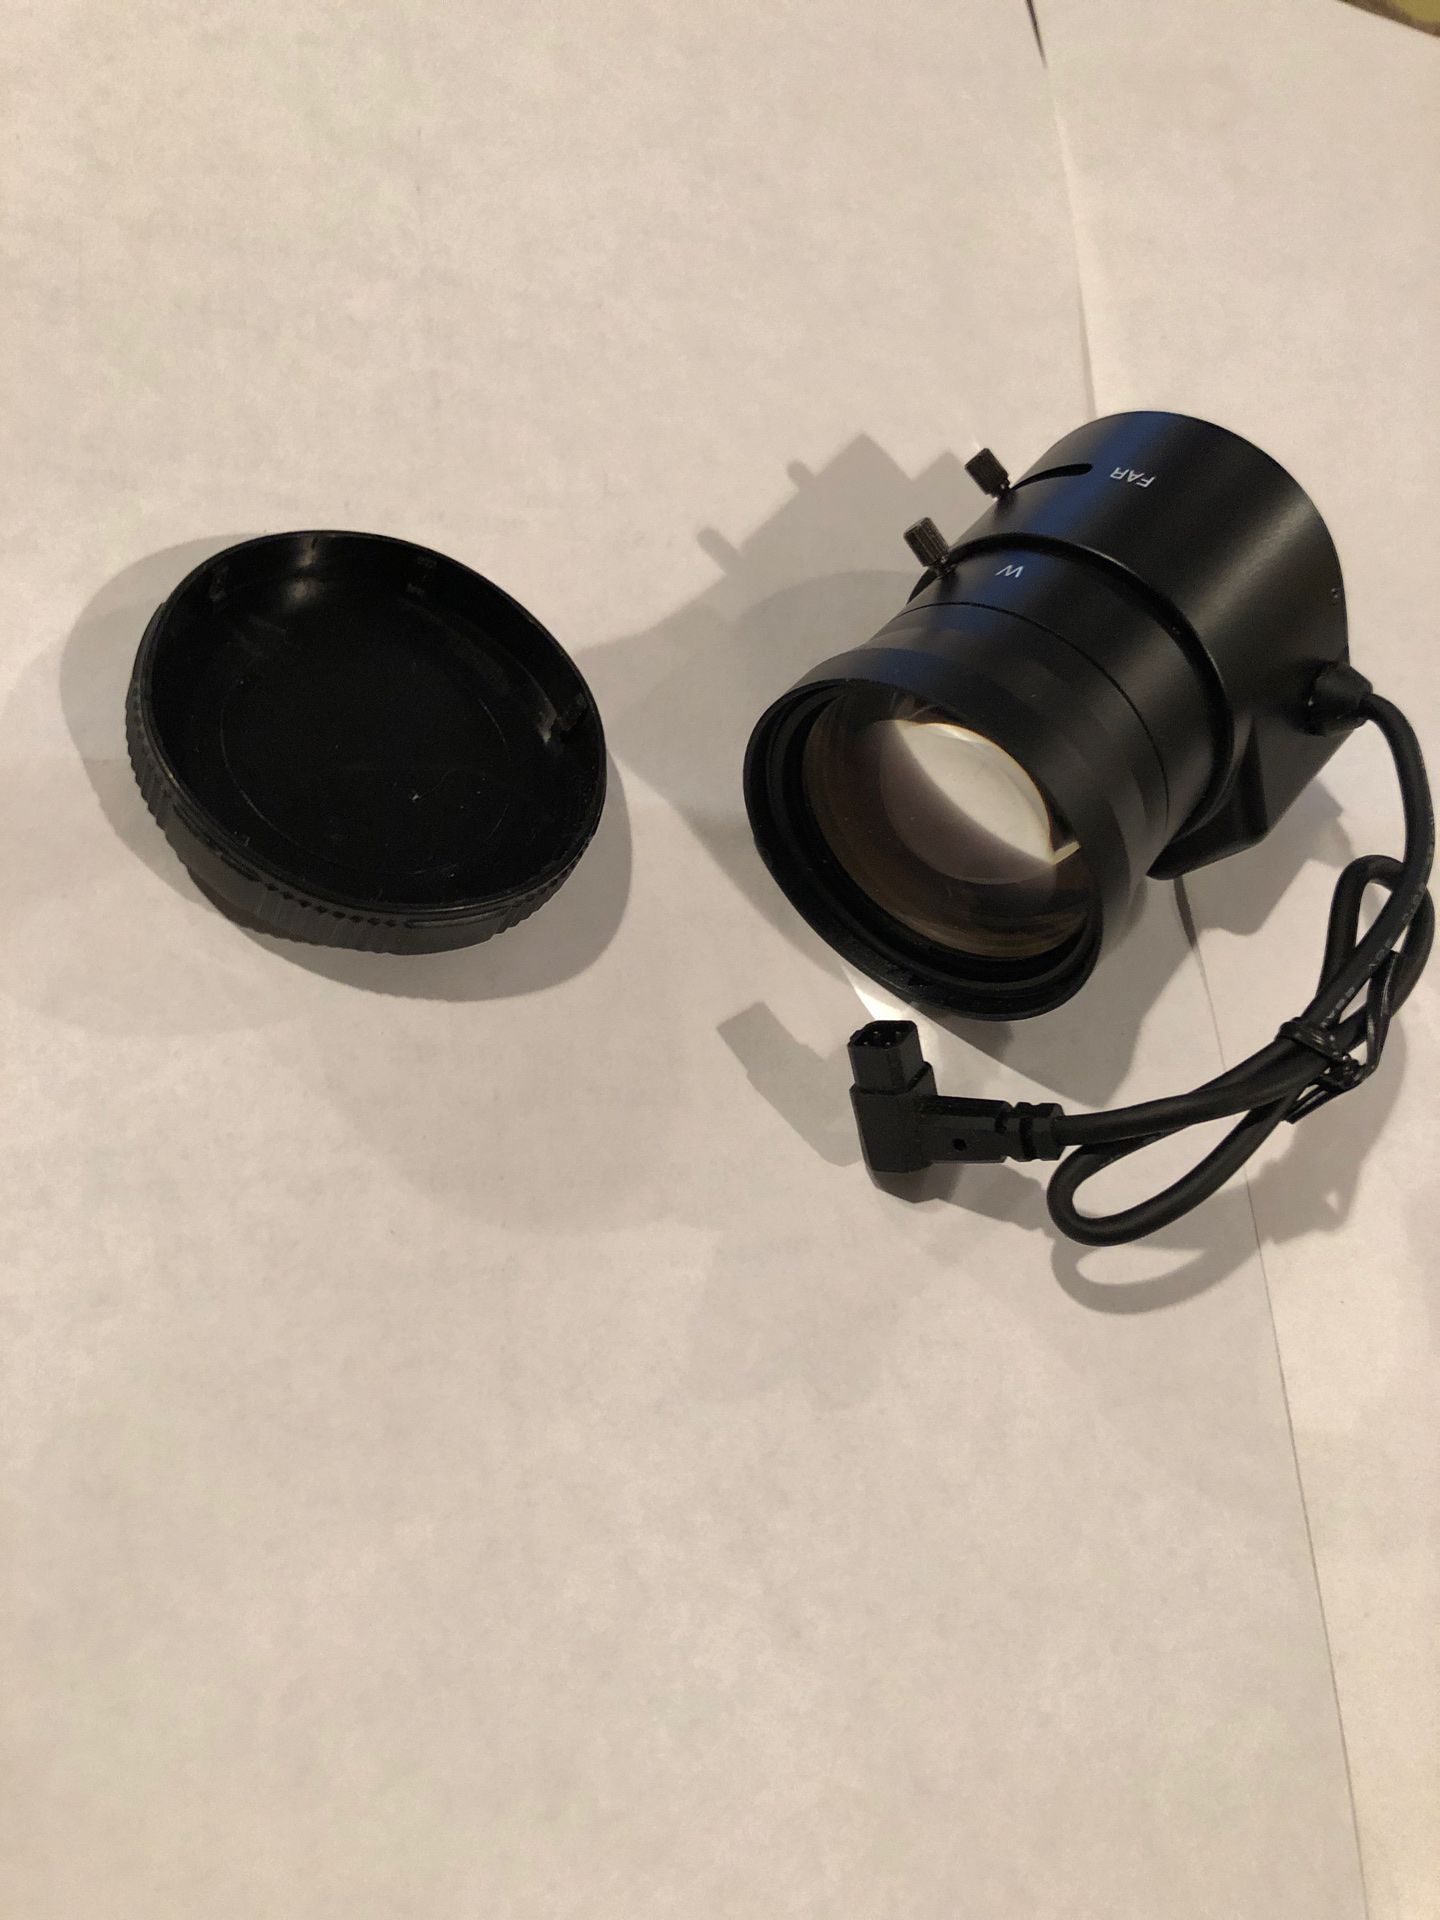 CCTV HighQuality Security Surveillance Camera Lens 1/3. Auto Iris 5-100mm Lens